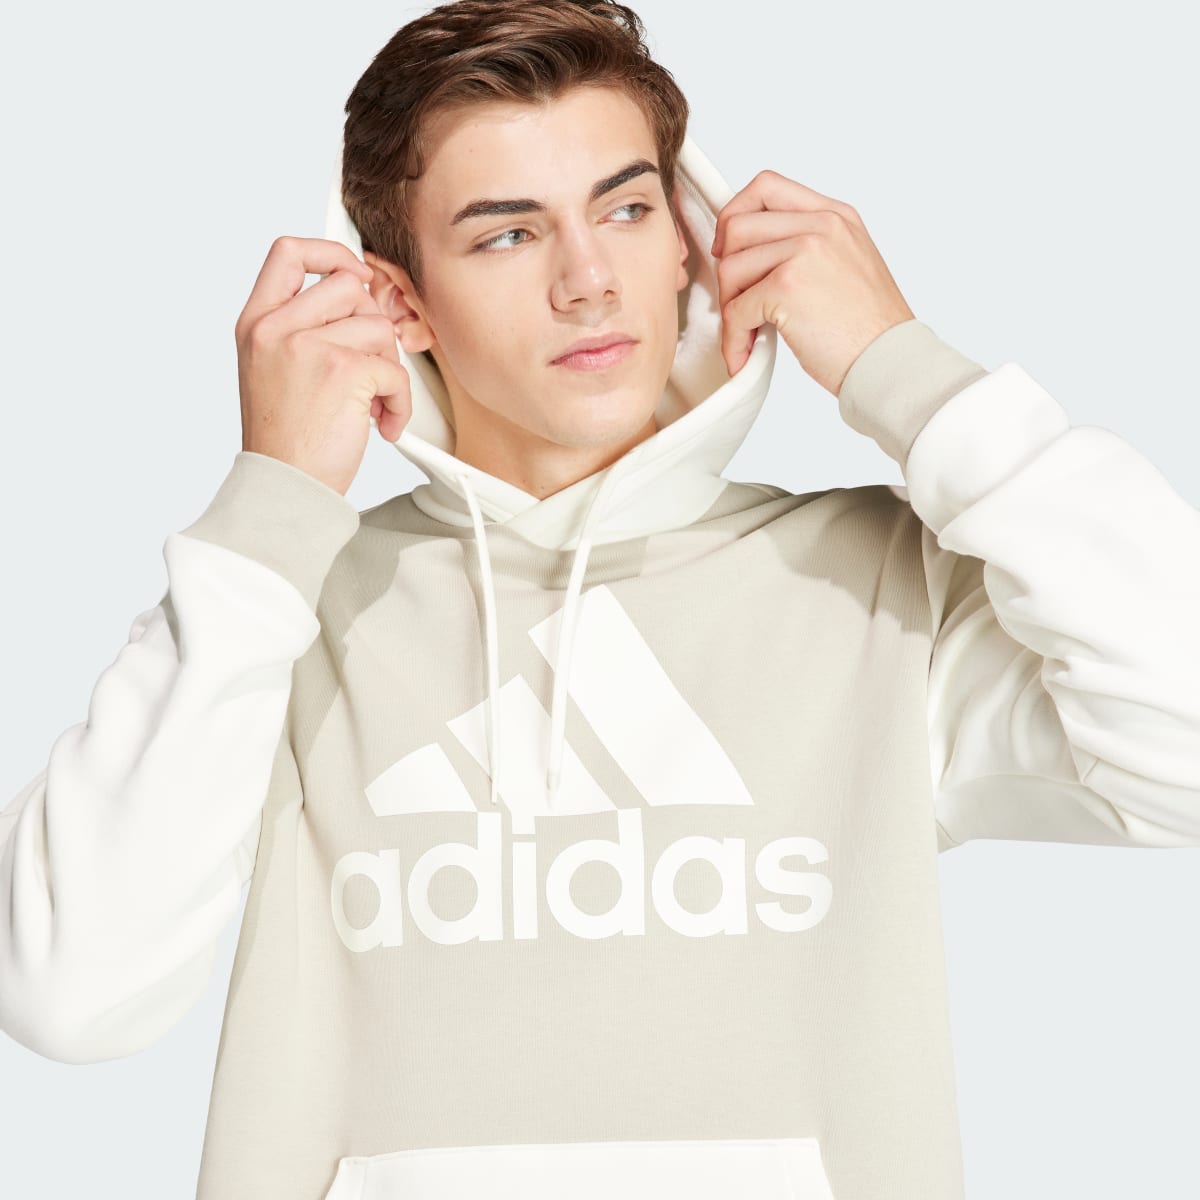 Adidas Camisola com Capuz em Fleece Essentials. 6